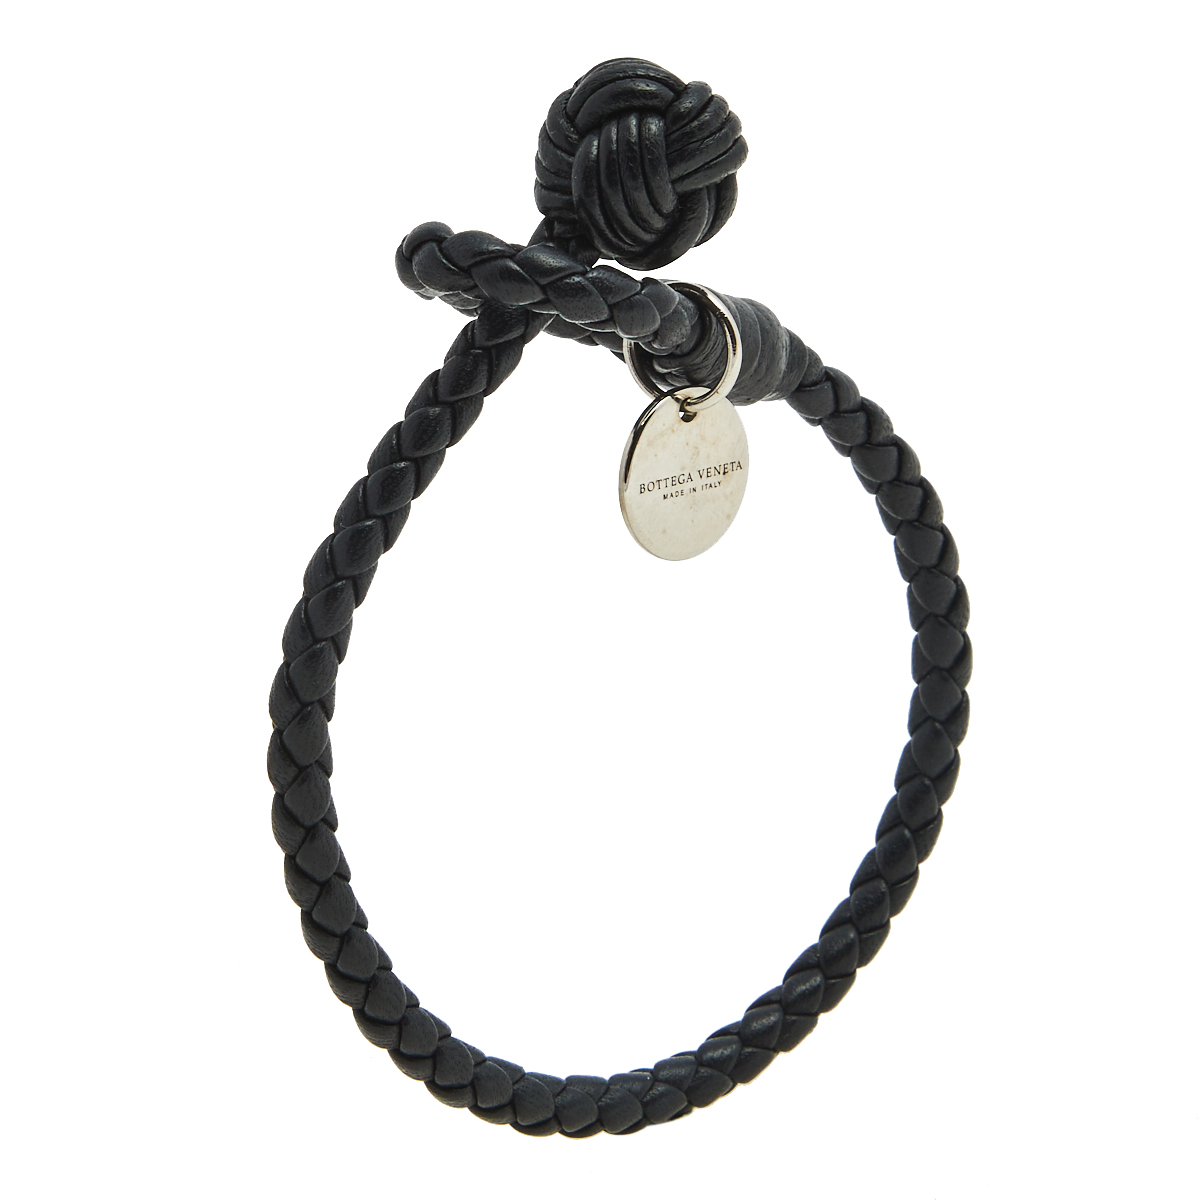 

Bottega Veneta Black Intrecciato Nappa Leather Single Strand Bracelet